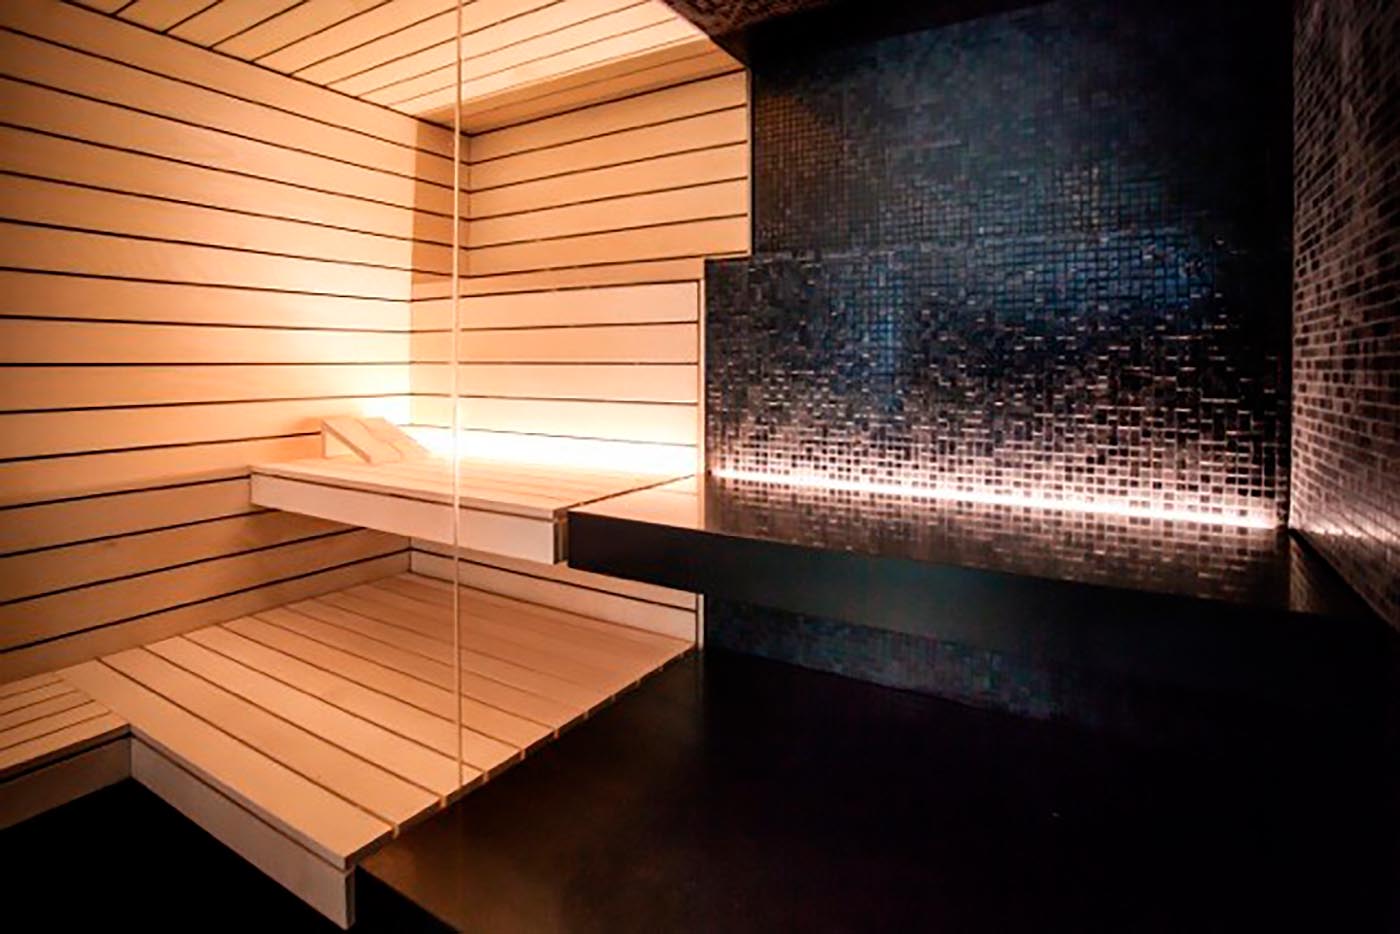 Kombination aus einer hellen Sauna mit Hinterwandofen und direkt daneben einem Dampfbad in schwarzen Mosaikfliesen, nur getrennt durch eine Glasscheibe